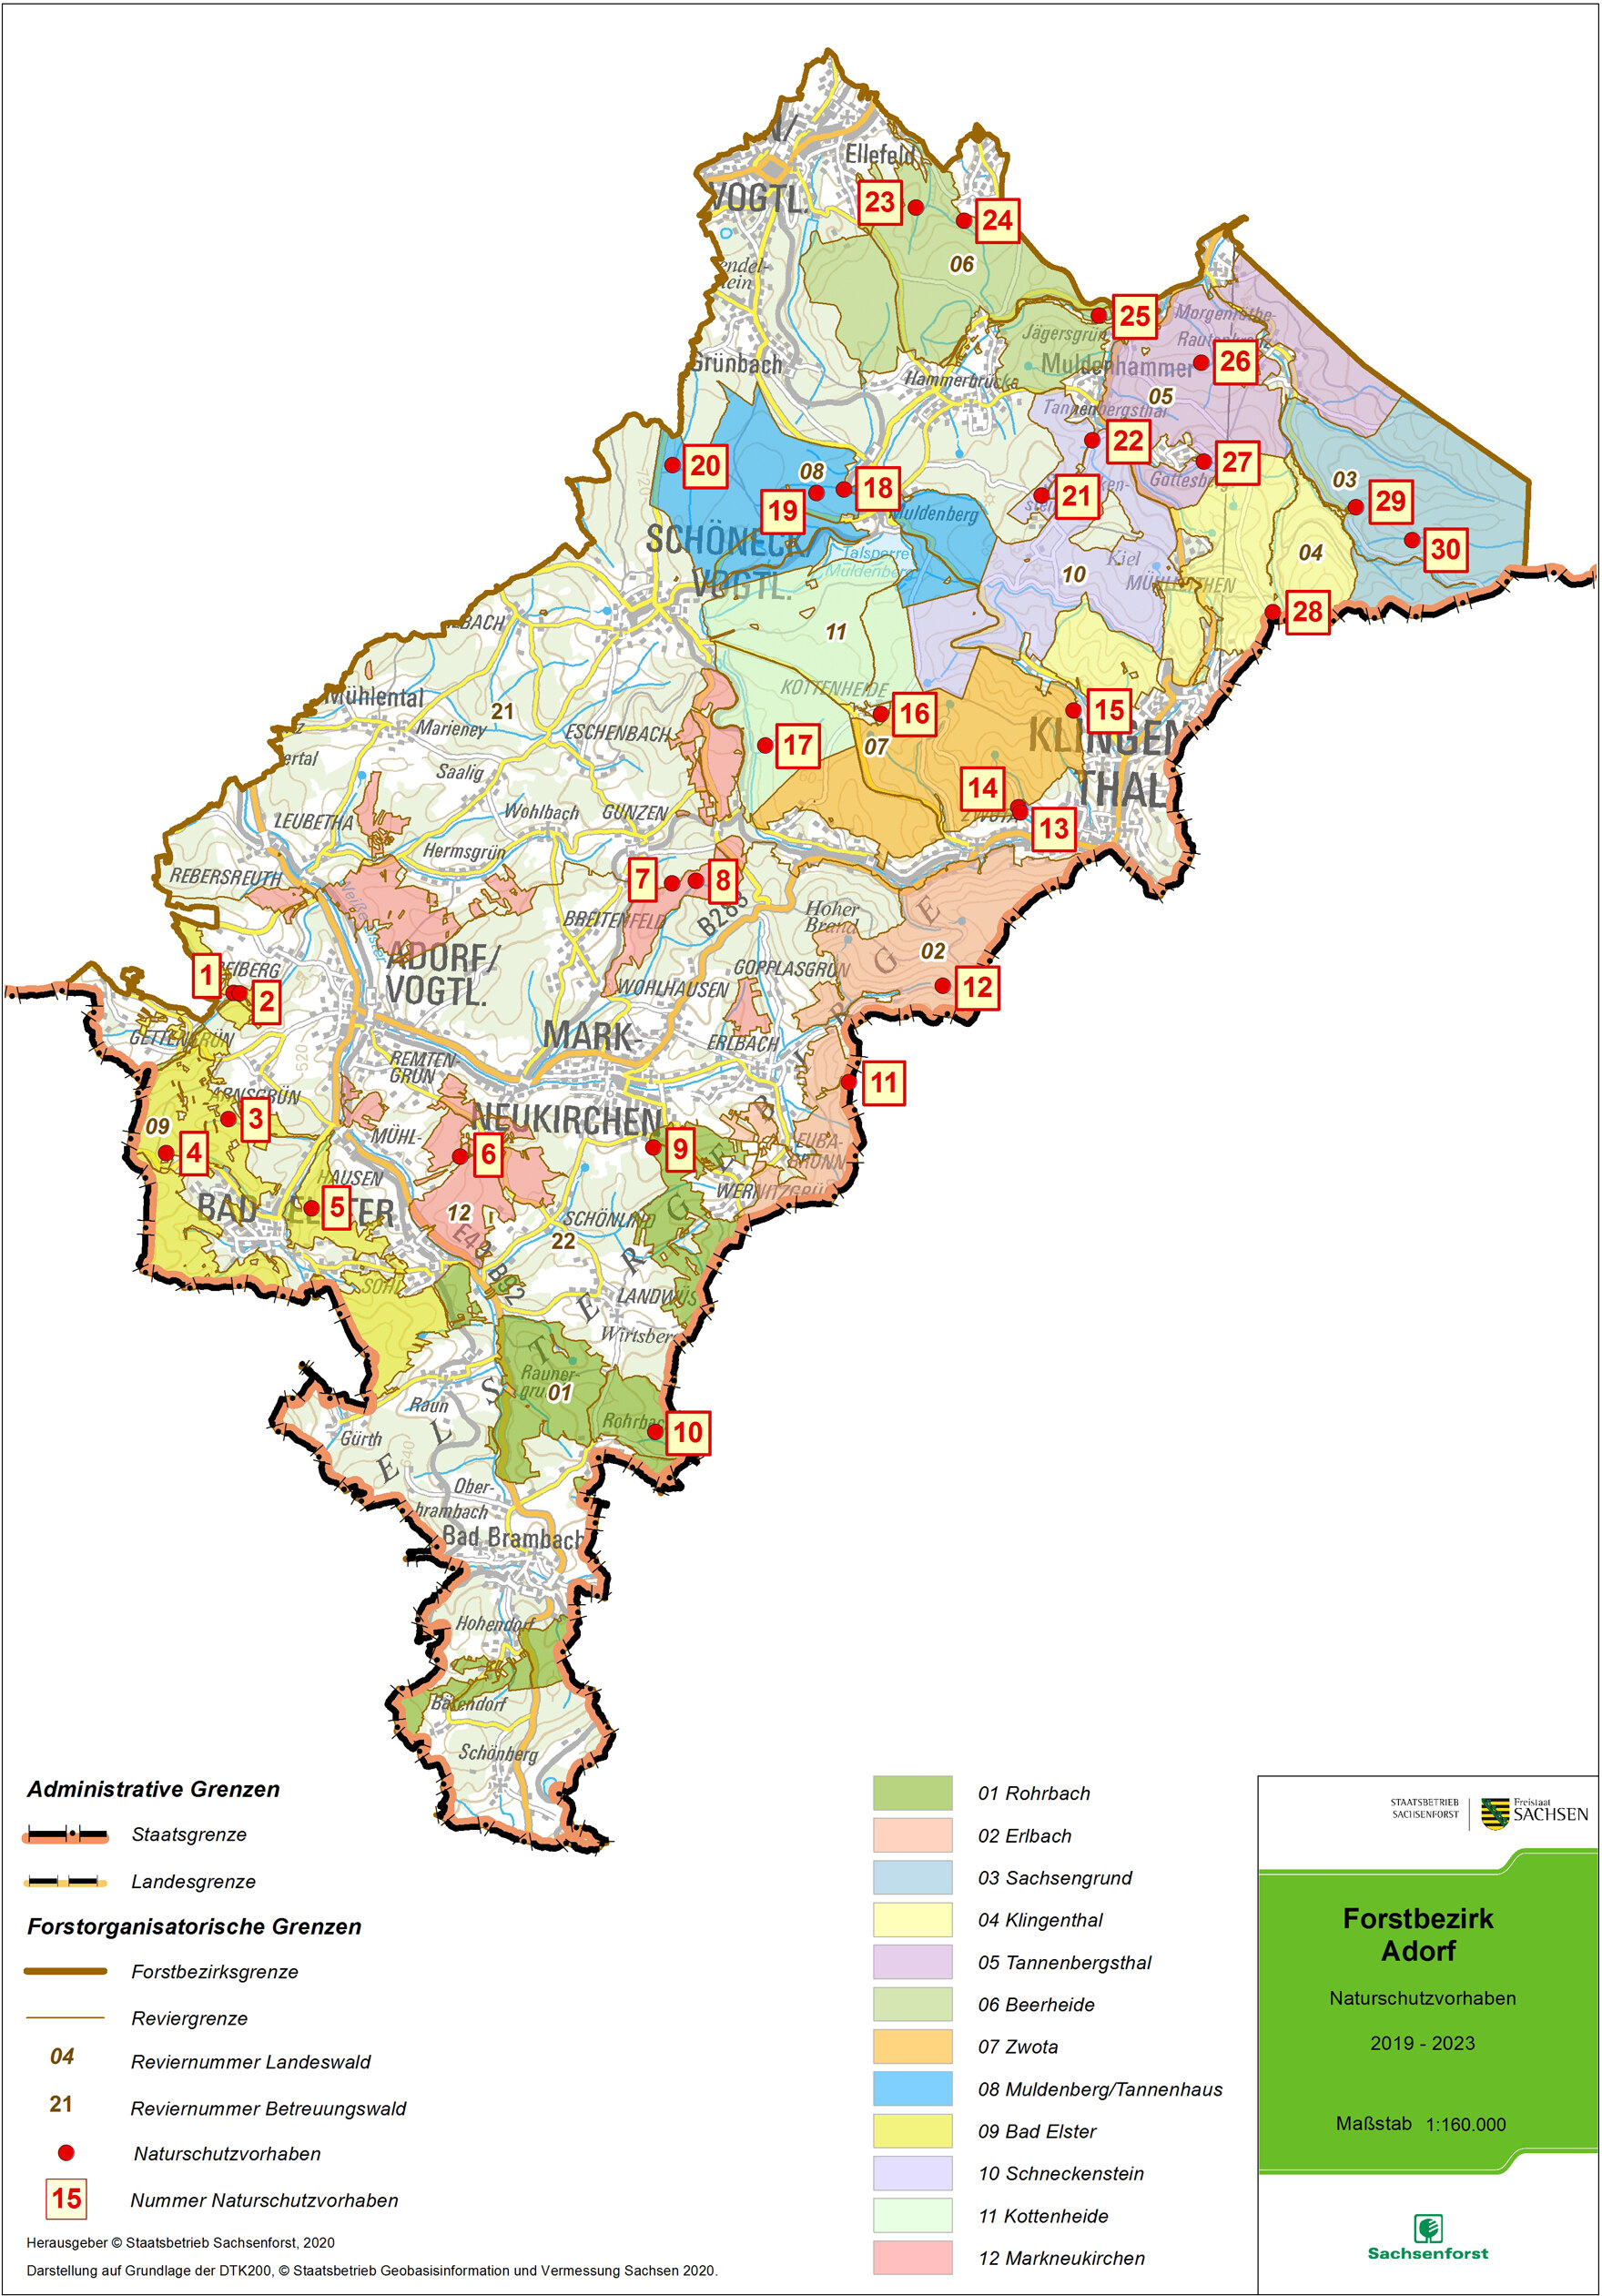 Übersichtskarte des Forstbezirkes mit den Standorten der Naturschutzprojekte